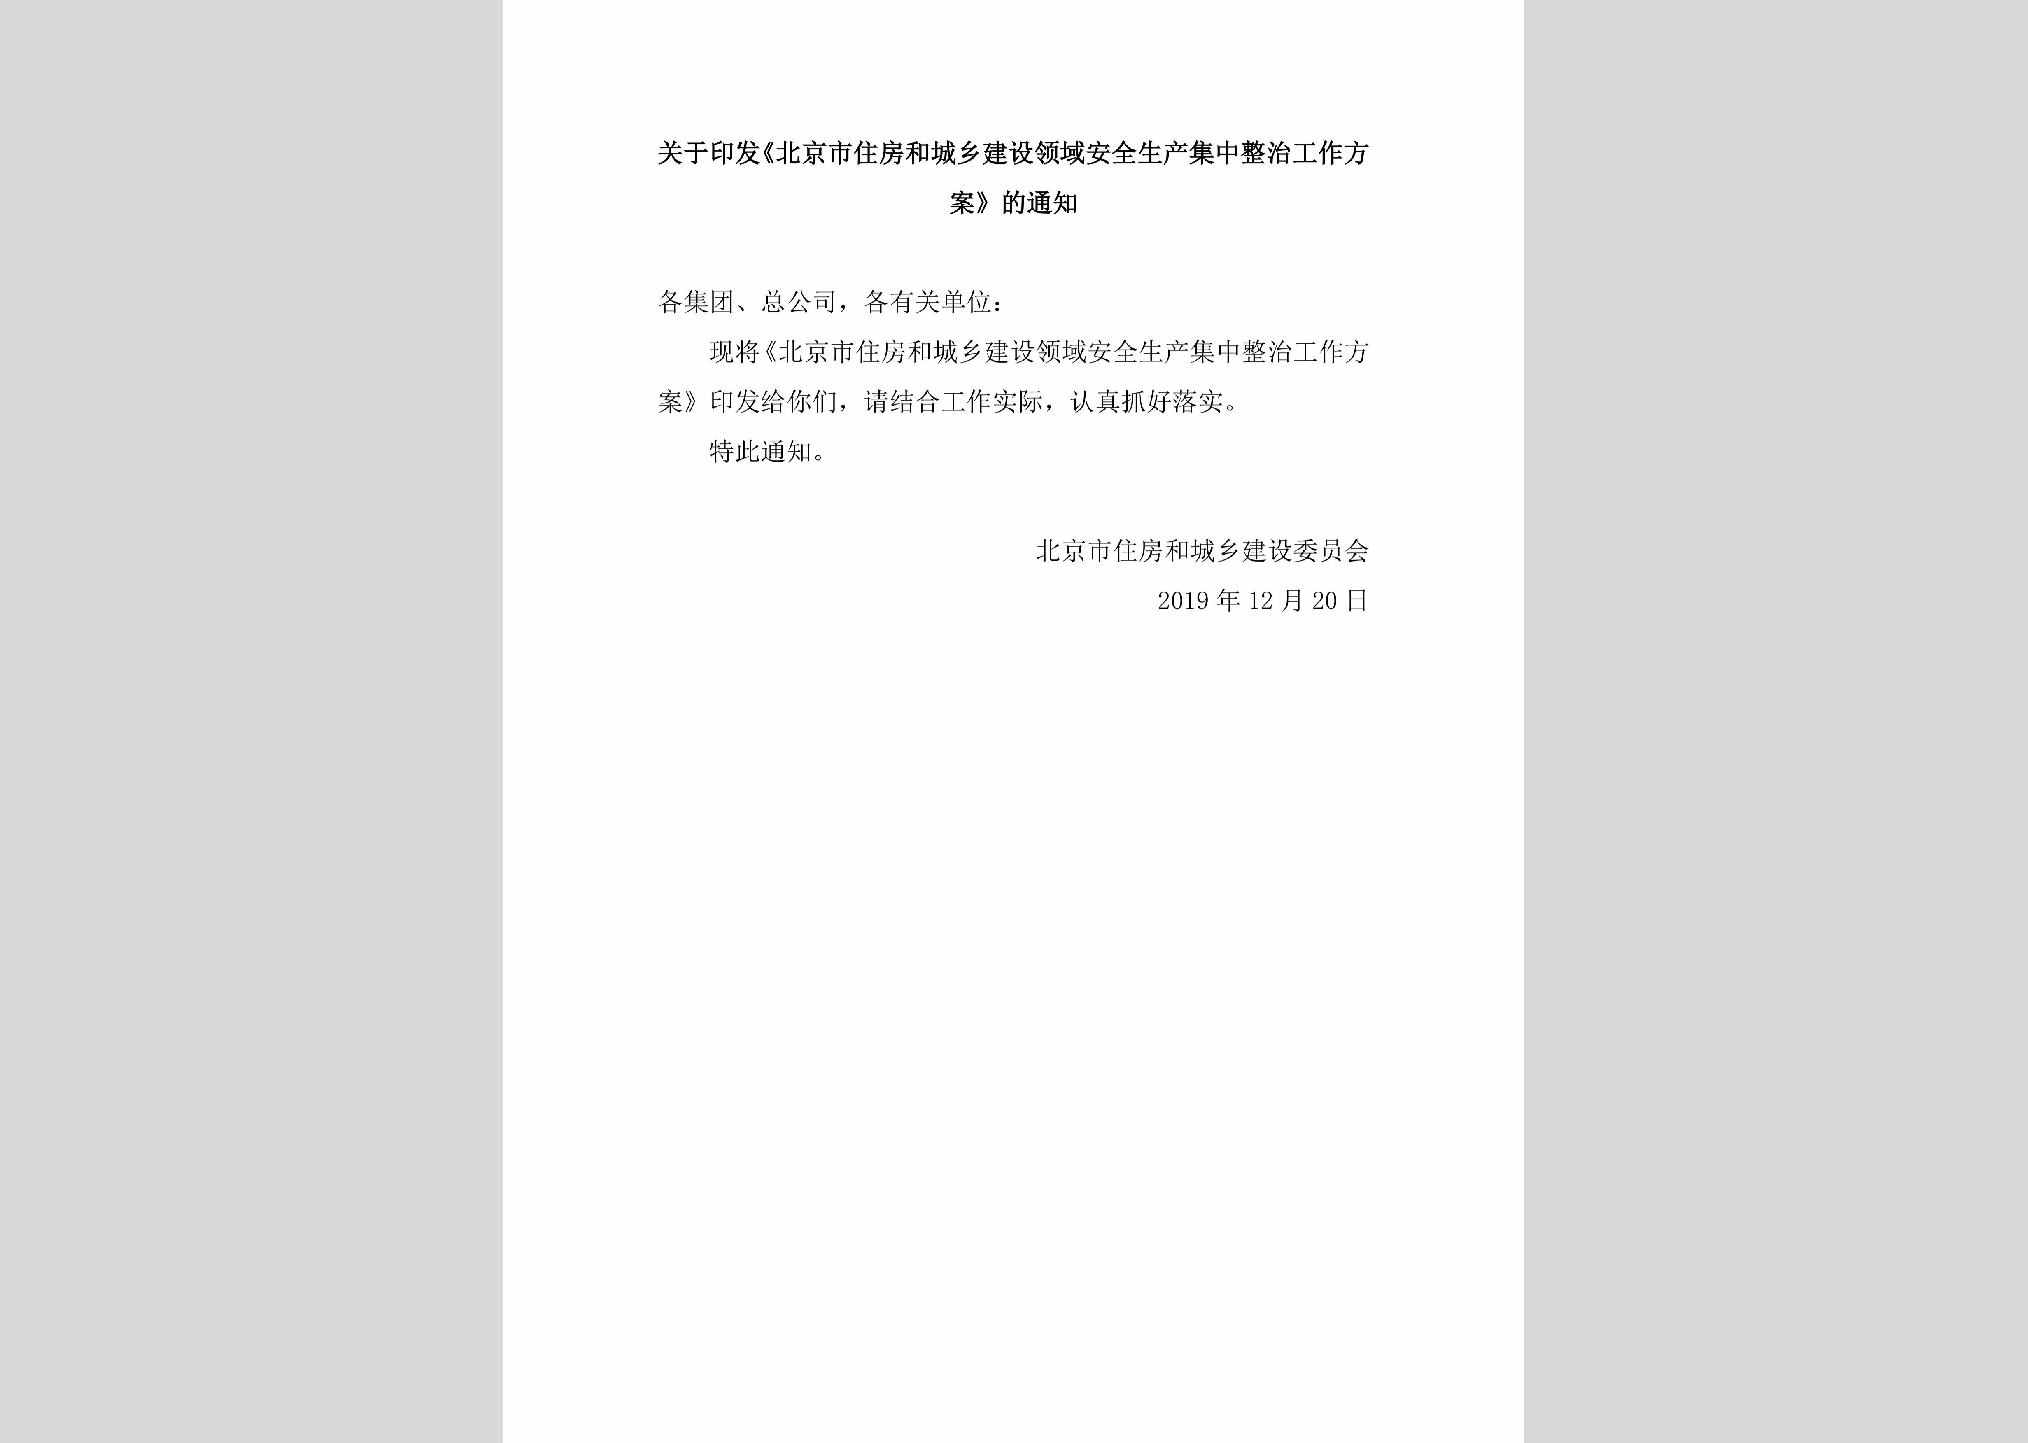 BJ-AQSCJZZZ-2019：关于印发《北京市住房和城乡建设领域安全生产集中整治工作方案》的通知